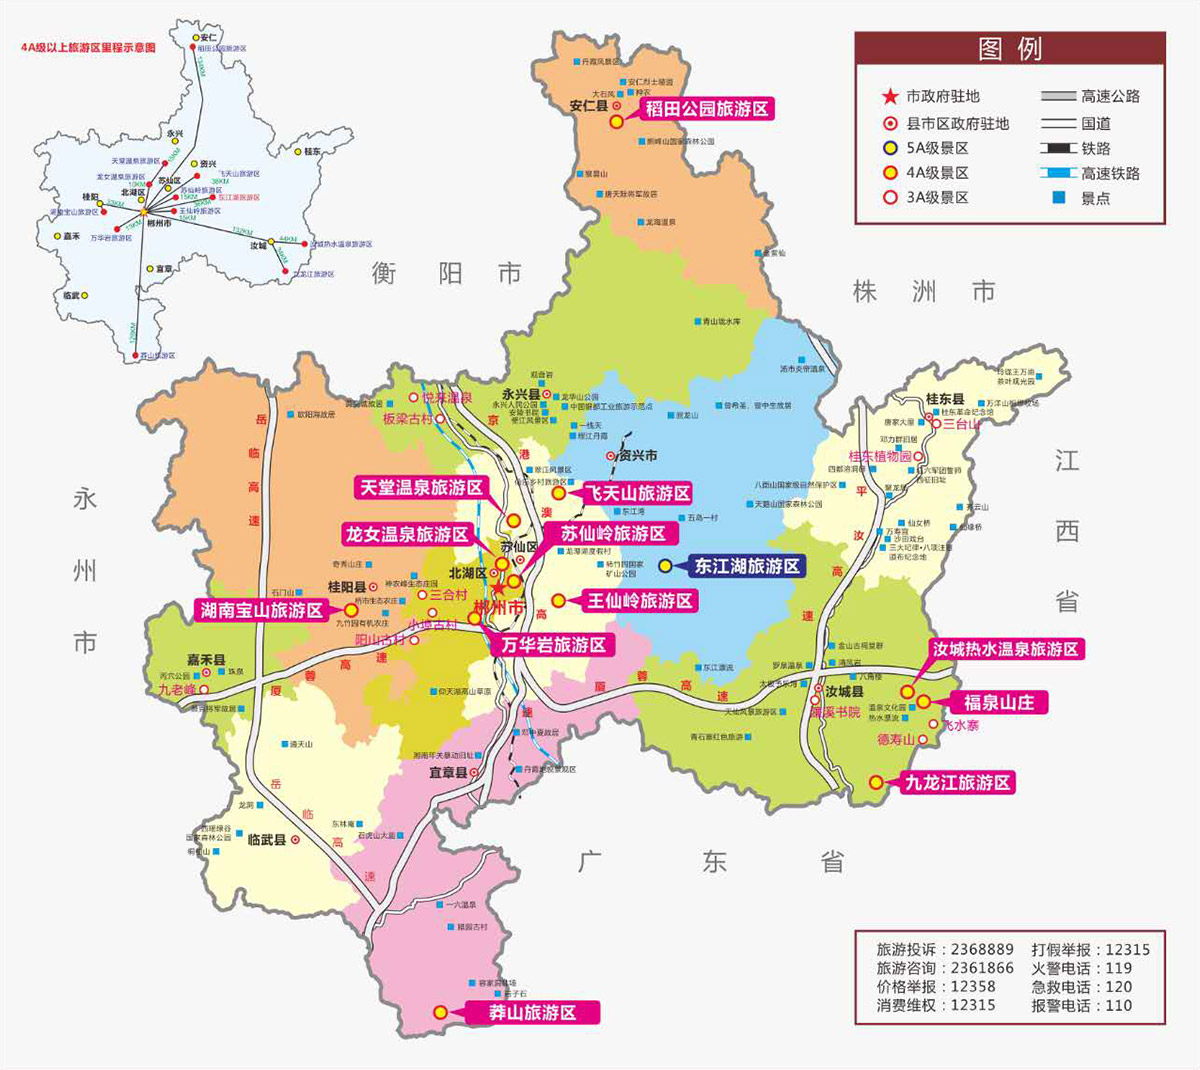 郴州交通旅行社官网旅游地图图片